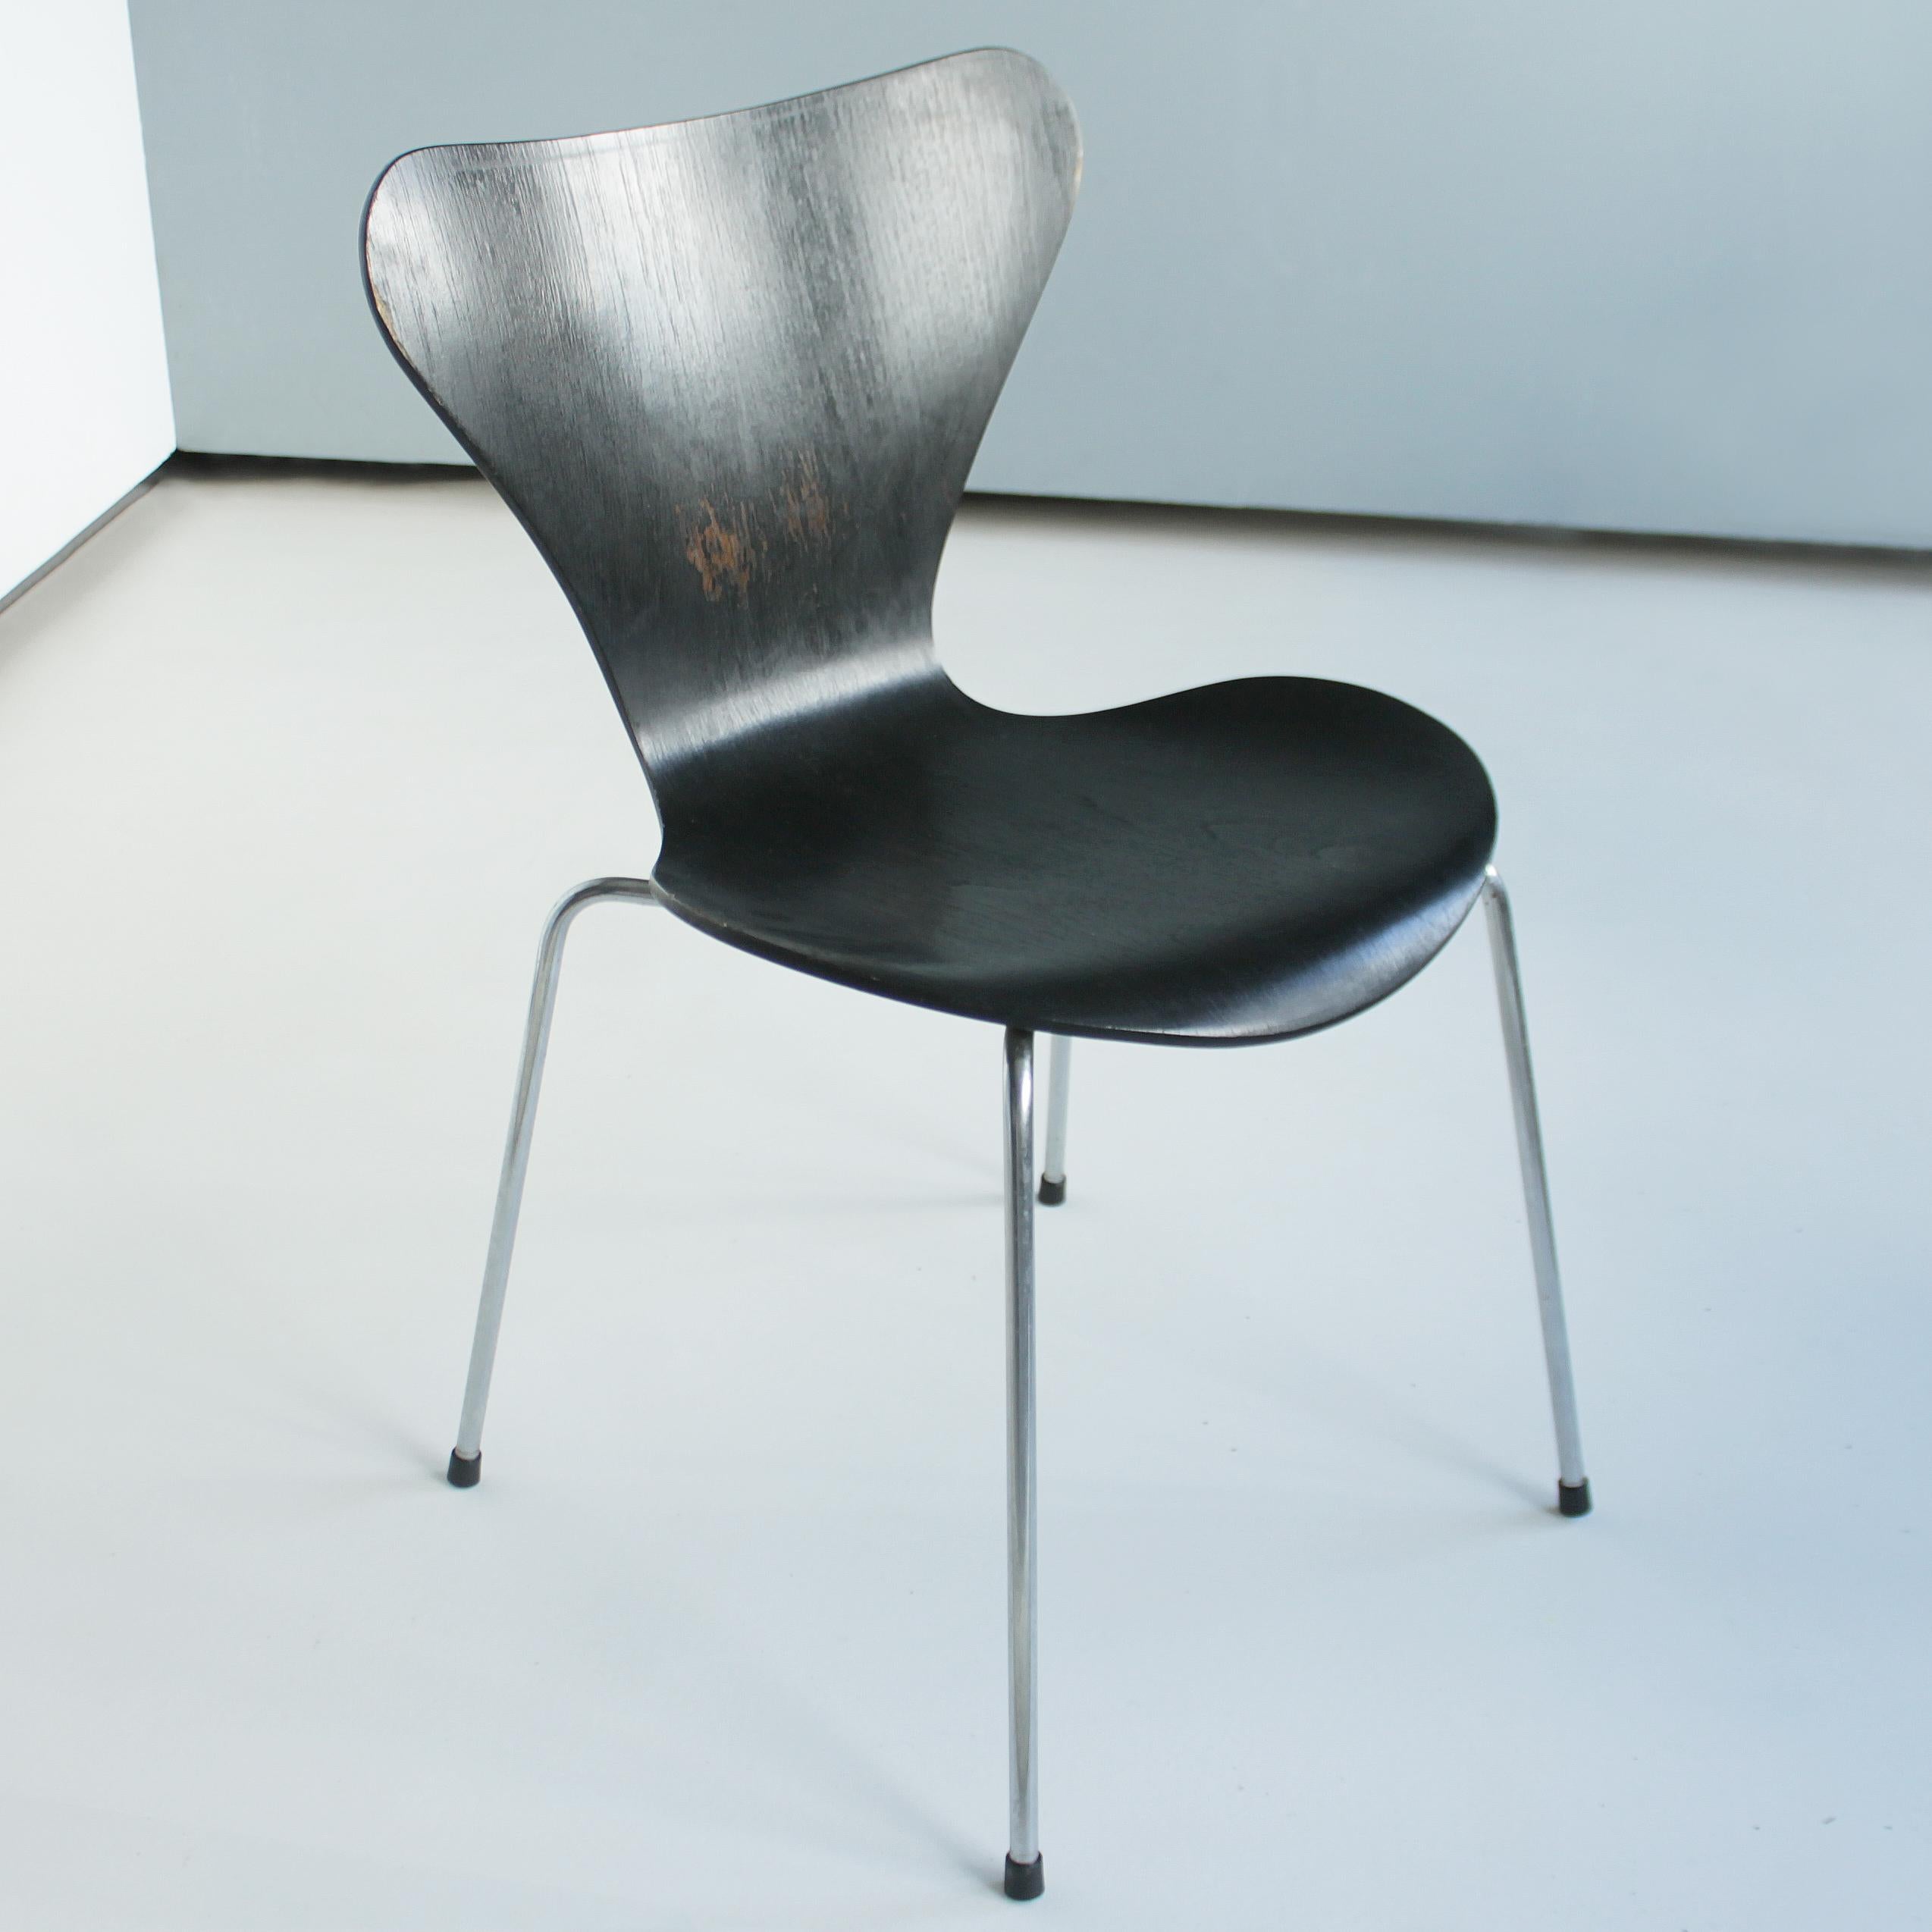 Scandinavian Modern Arne Jacobsen Series 7 Chairs by Fritz Hansen